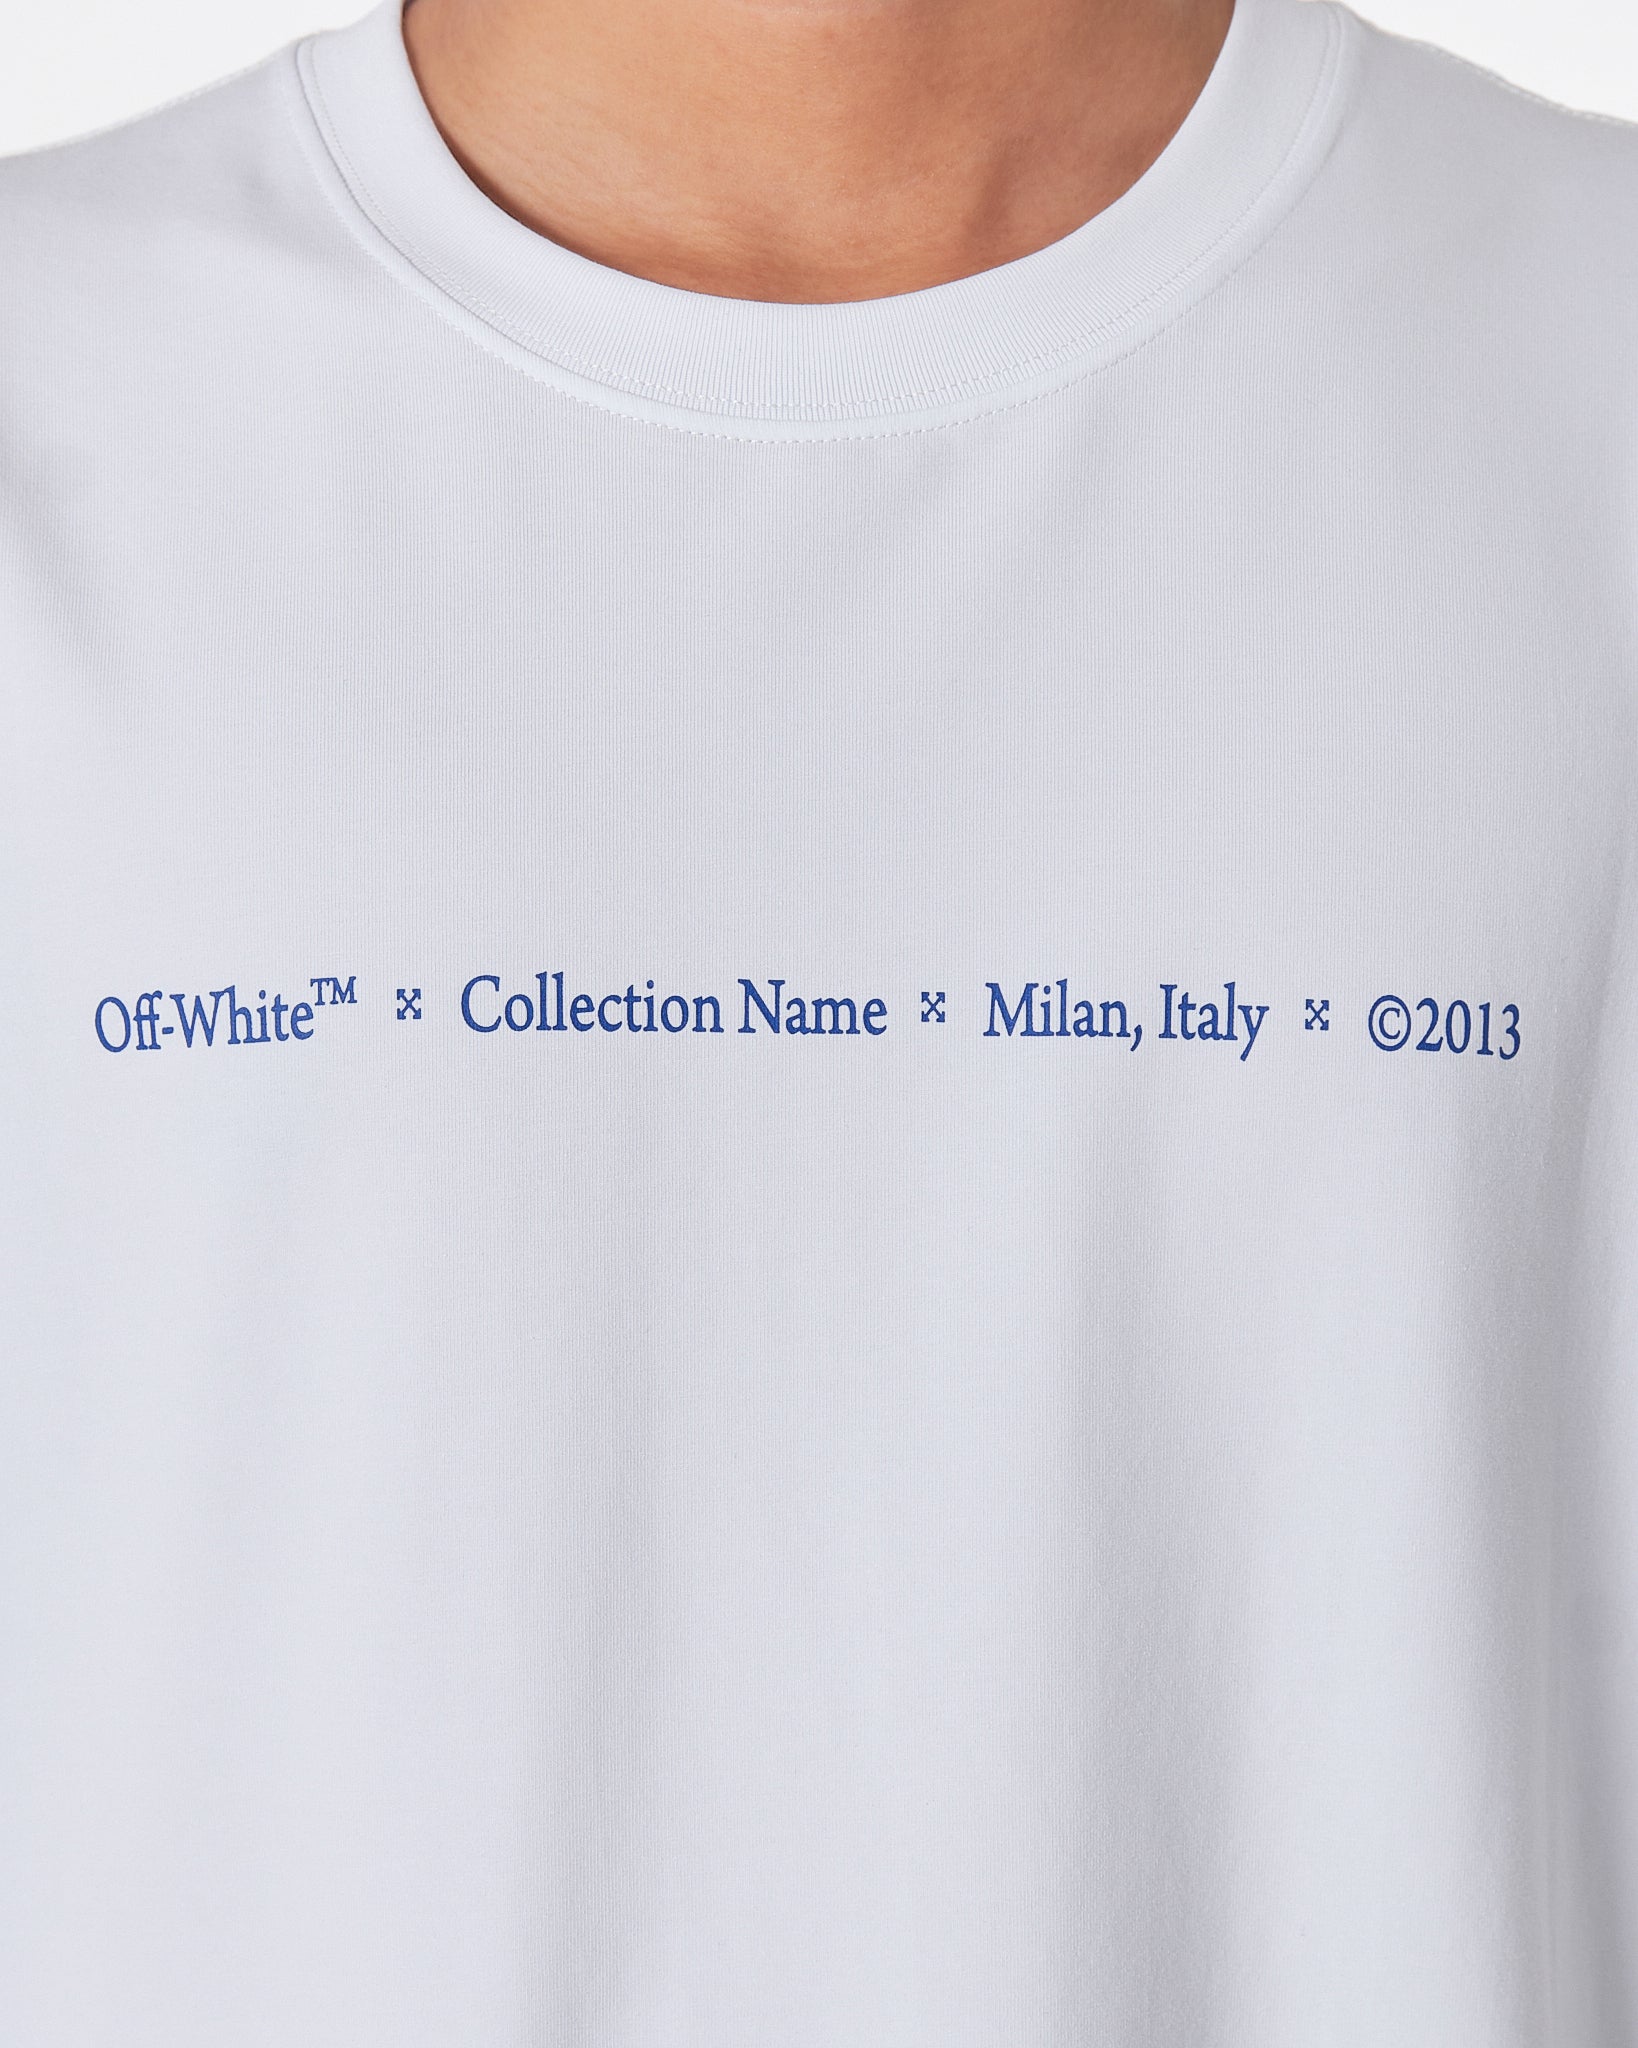 OW Cross Back Logo Graffiti Men White T-Shirt 17.50